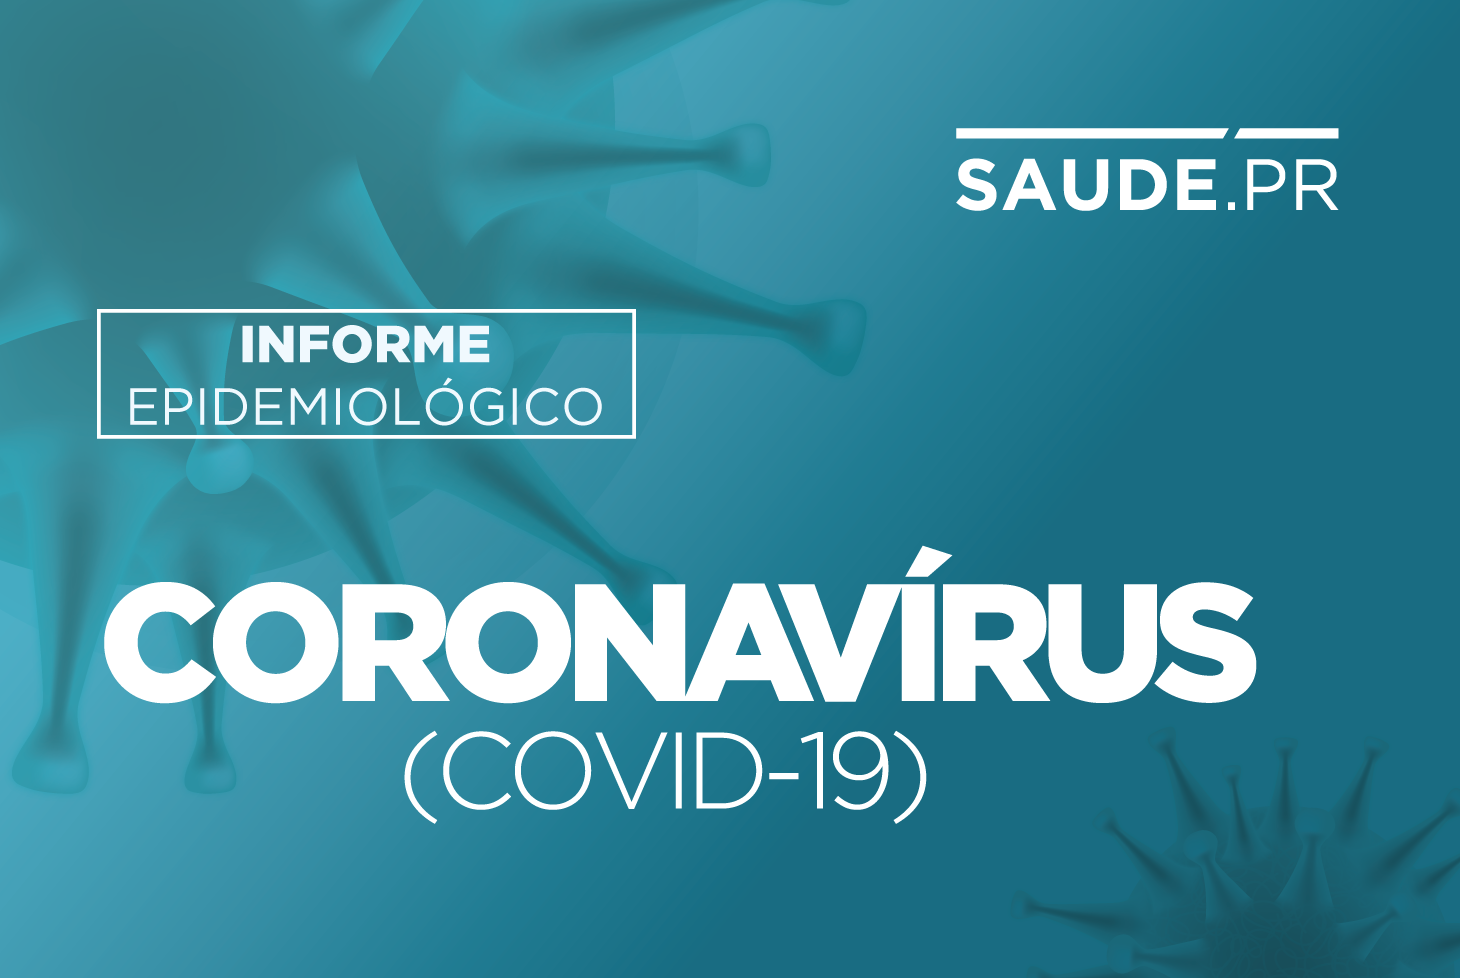  Paraná registra queda de 48% no número de internados por complicações do coronavírus